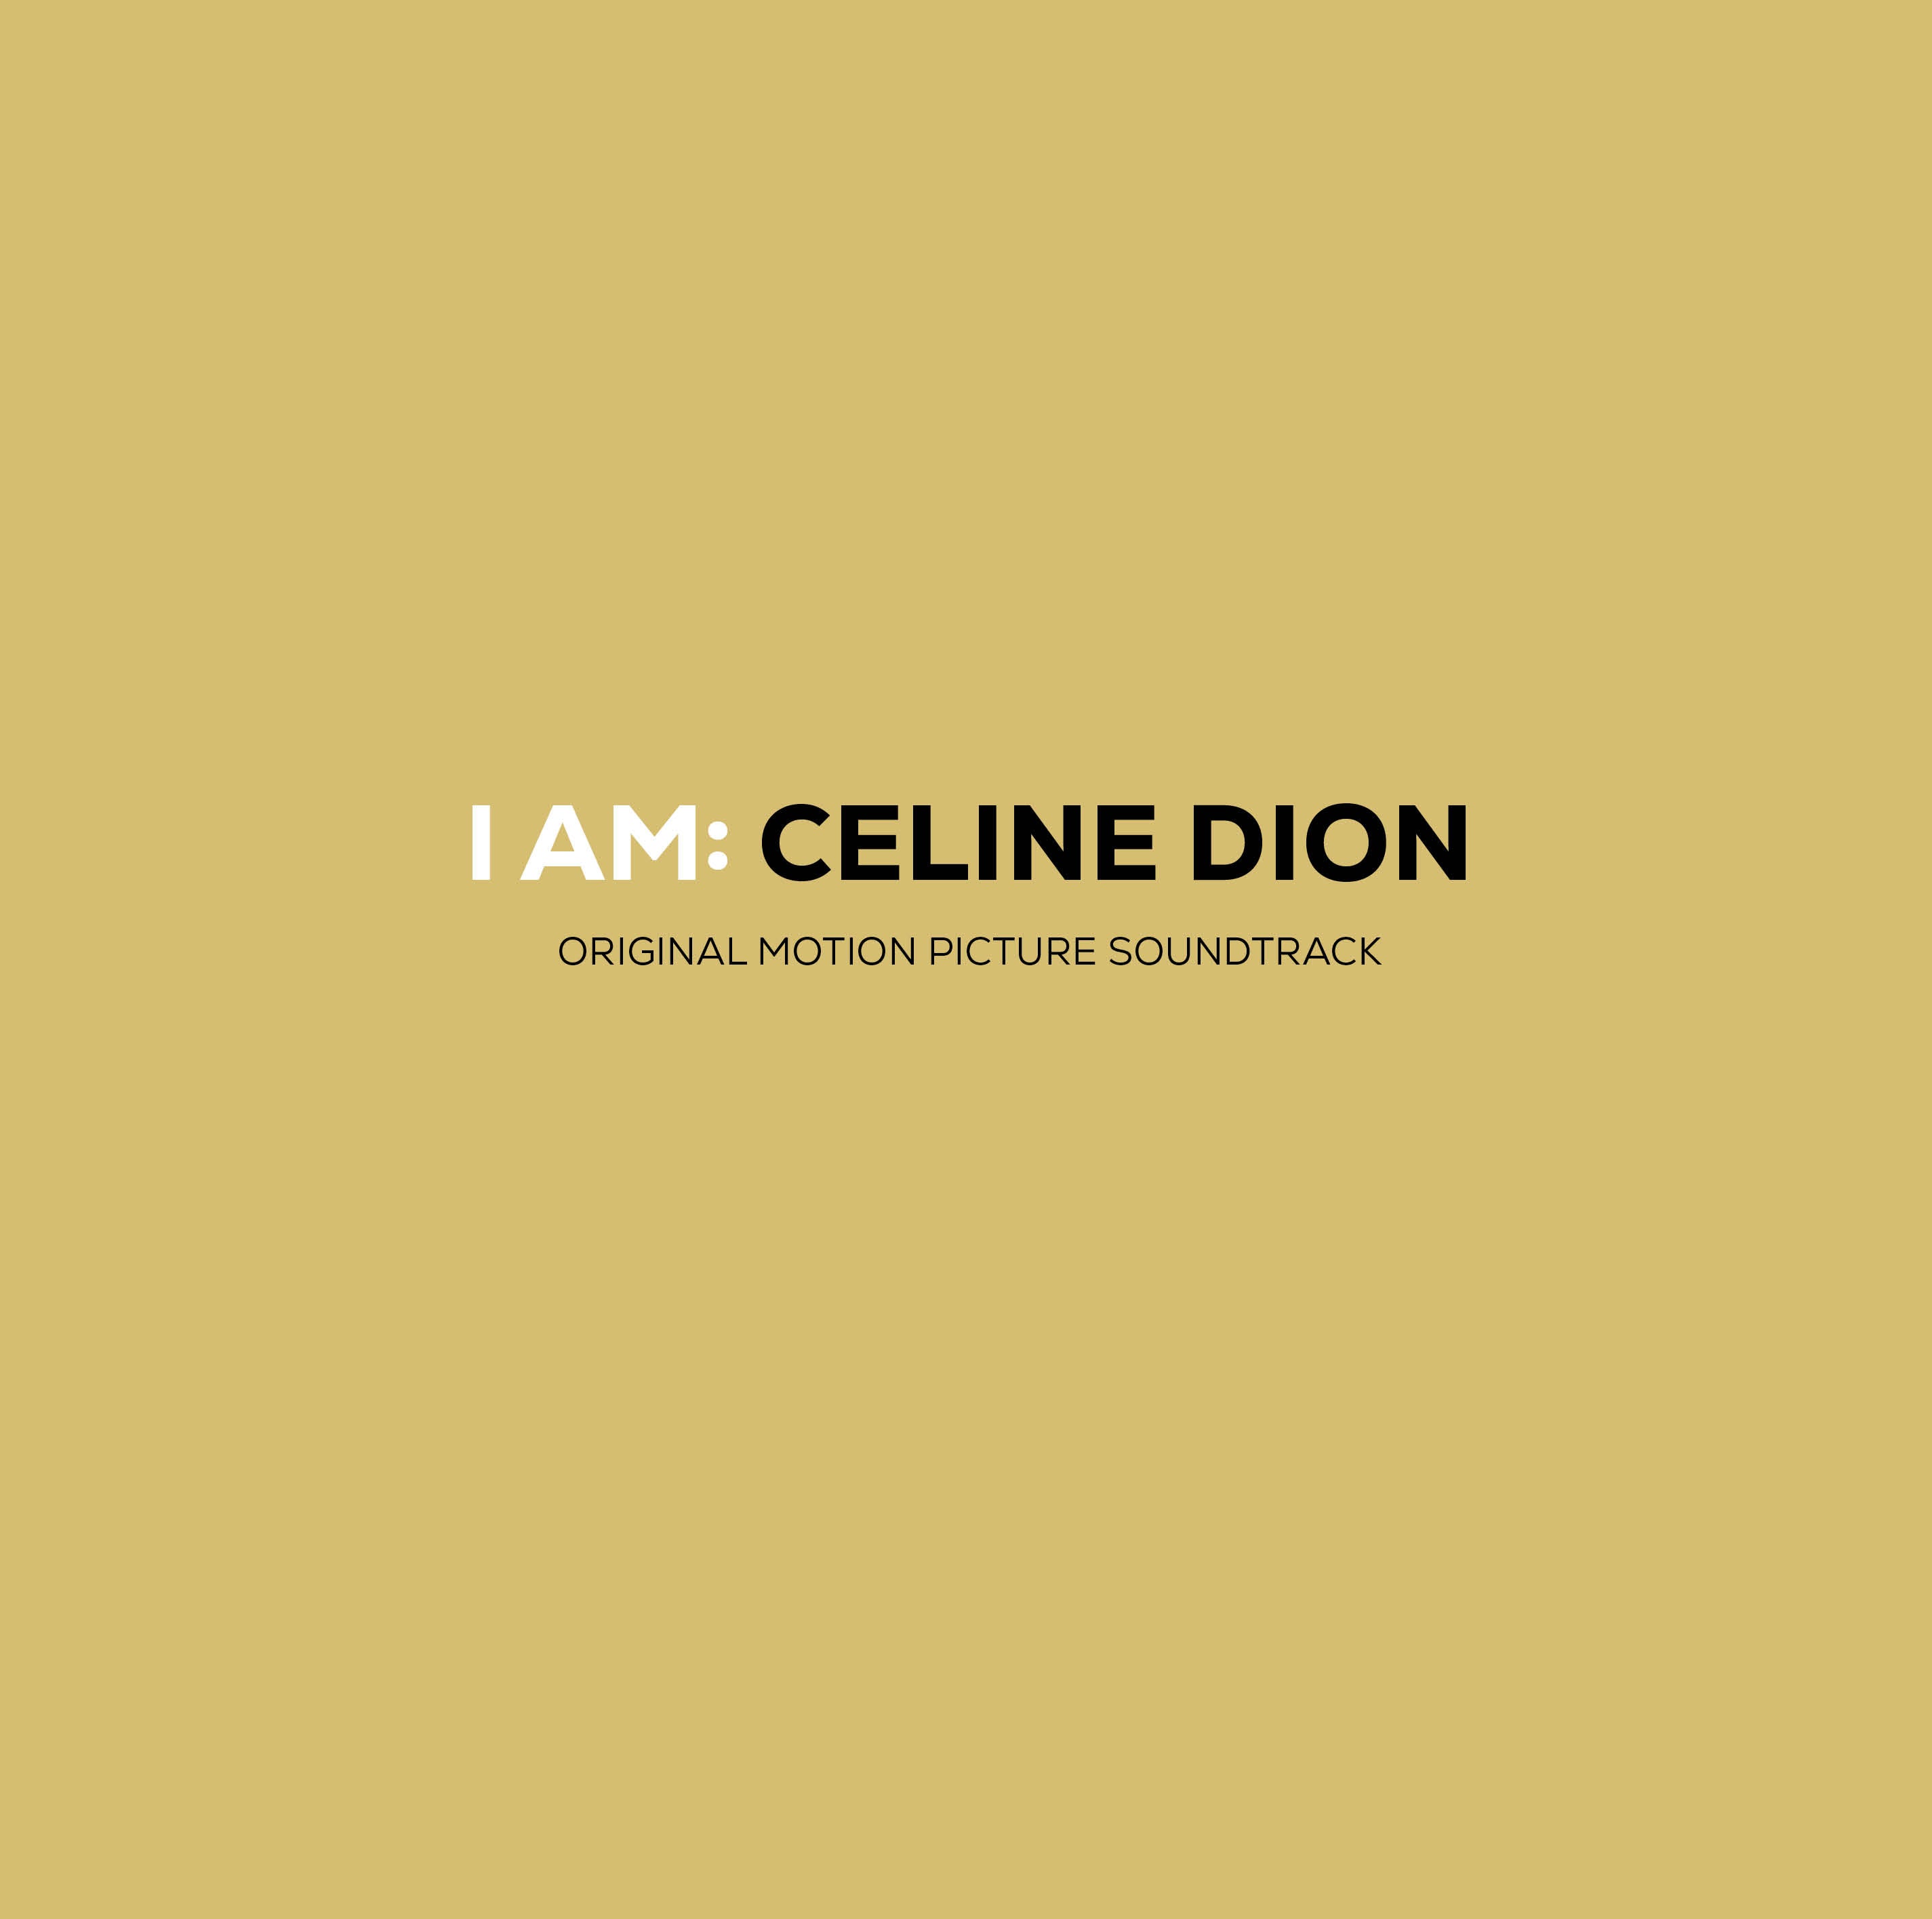 Celine Dion - I AM: CELINE DION CD